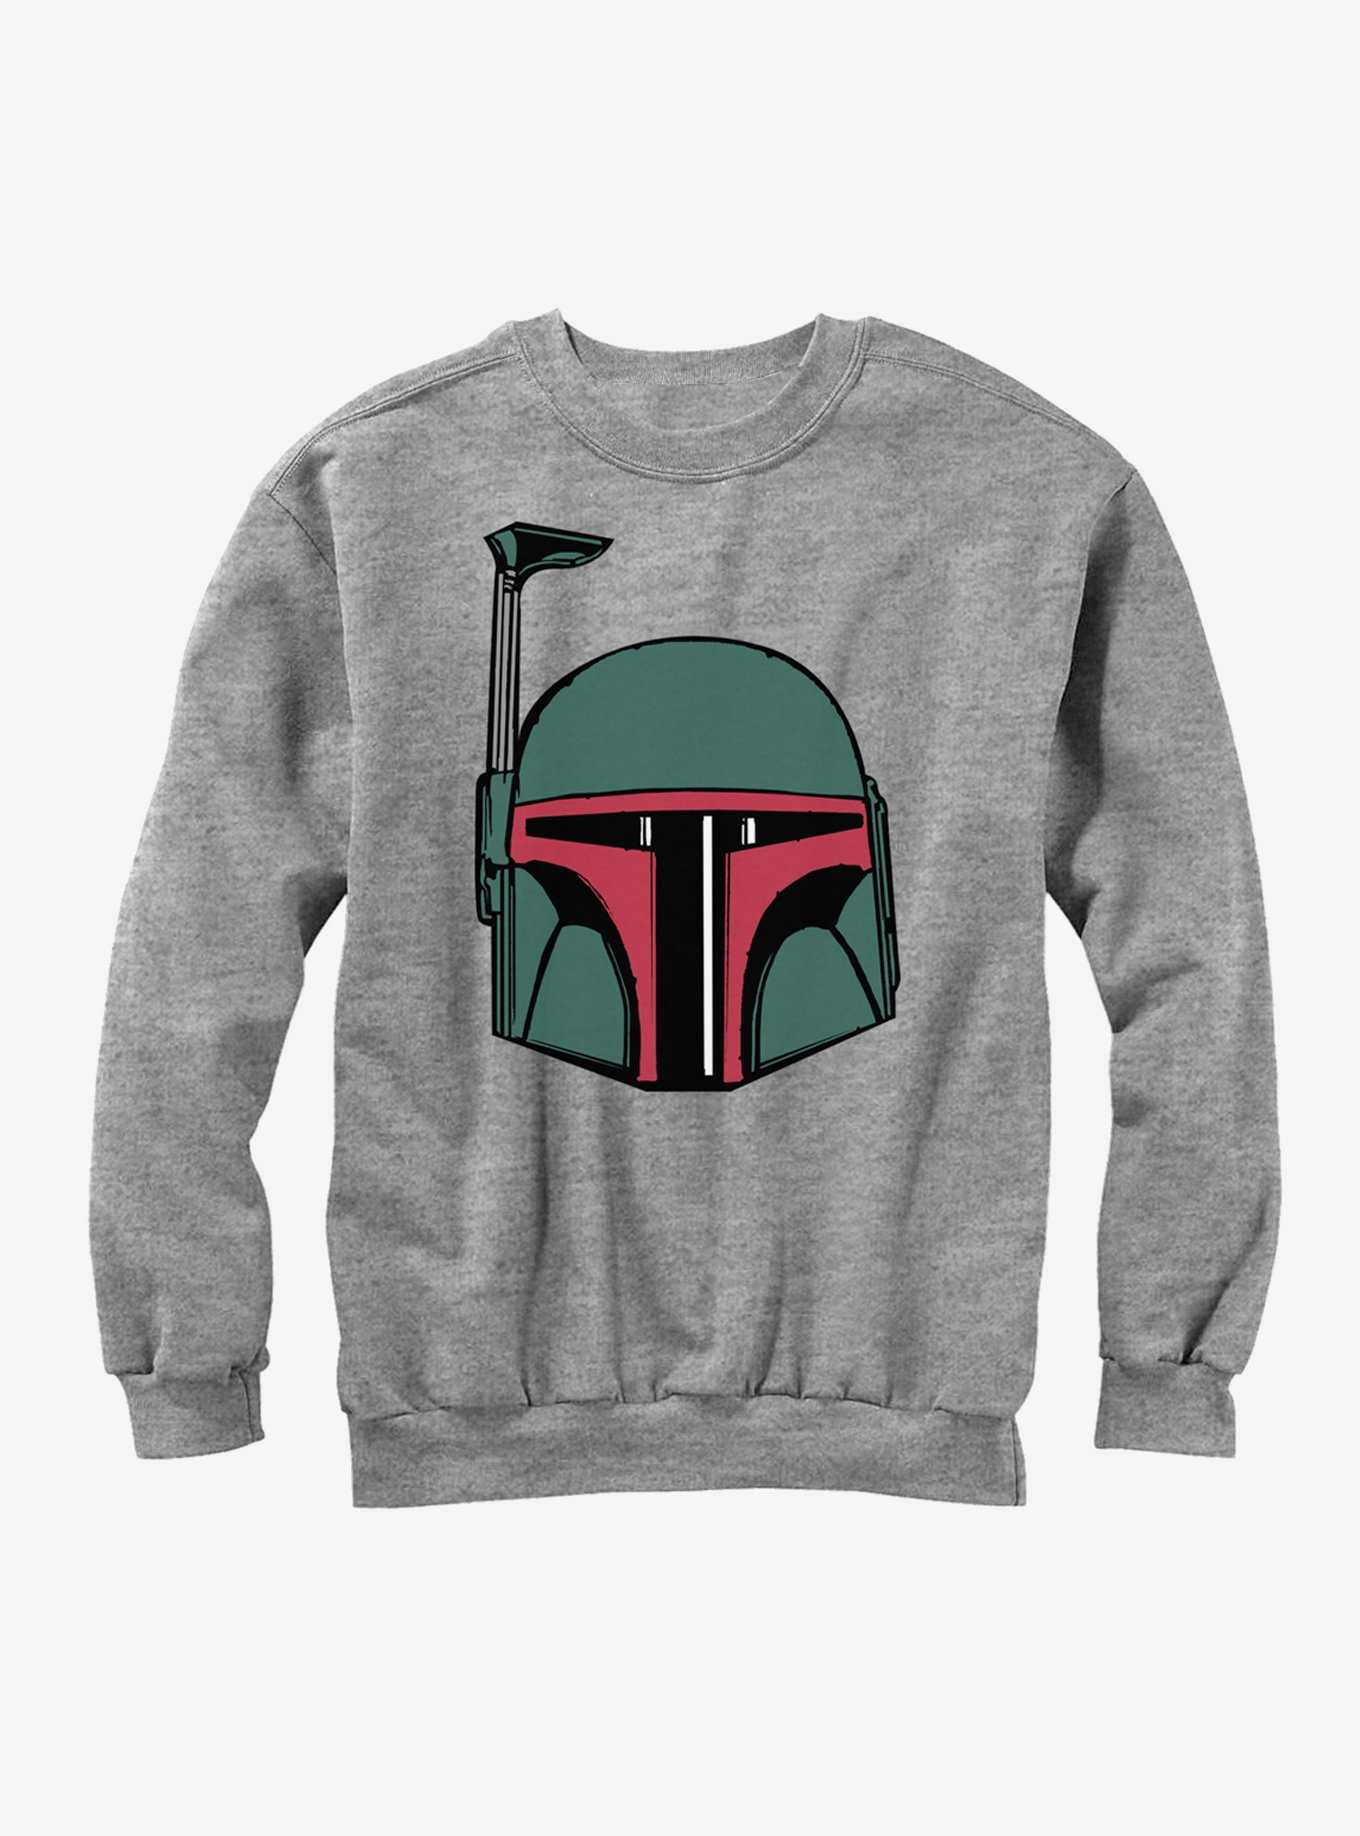 Star Wars Boba Fett Helmet Sweatshirt, , hi-res